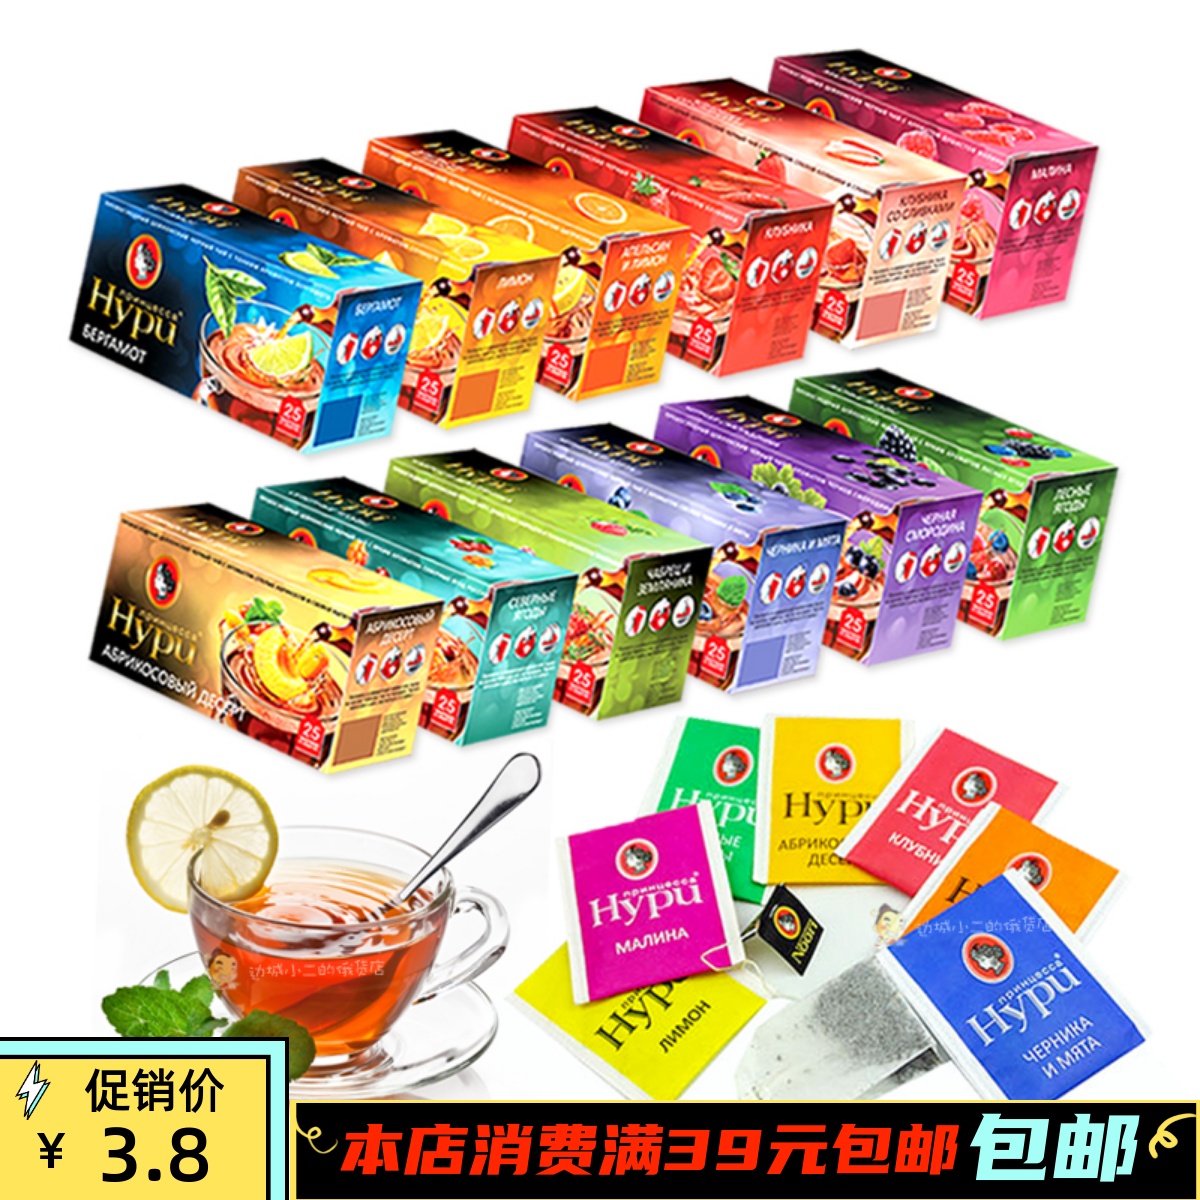 俄罗斯进口果茶 HYPN公主牌水果味红茶花茶茶叶25小包37g 满包邮